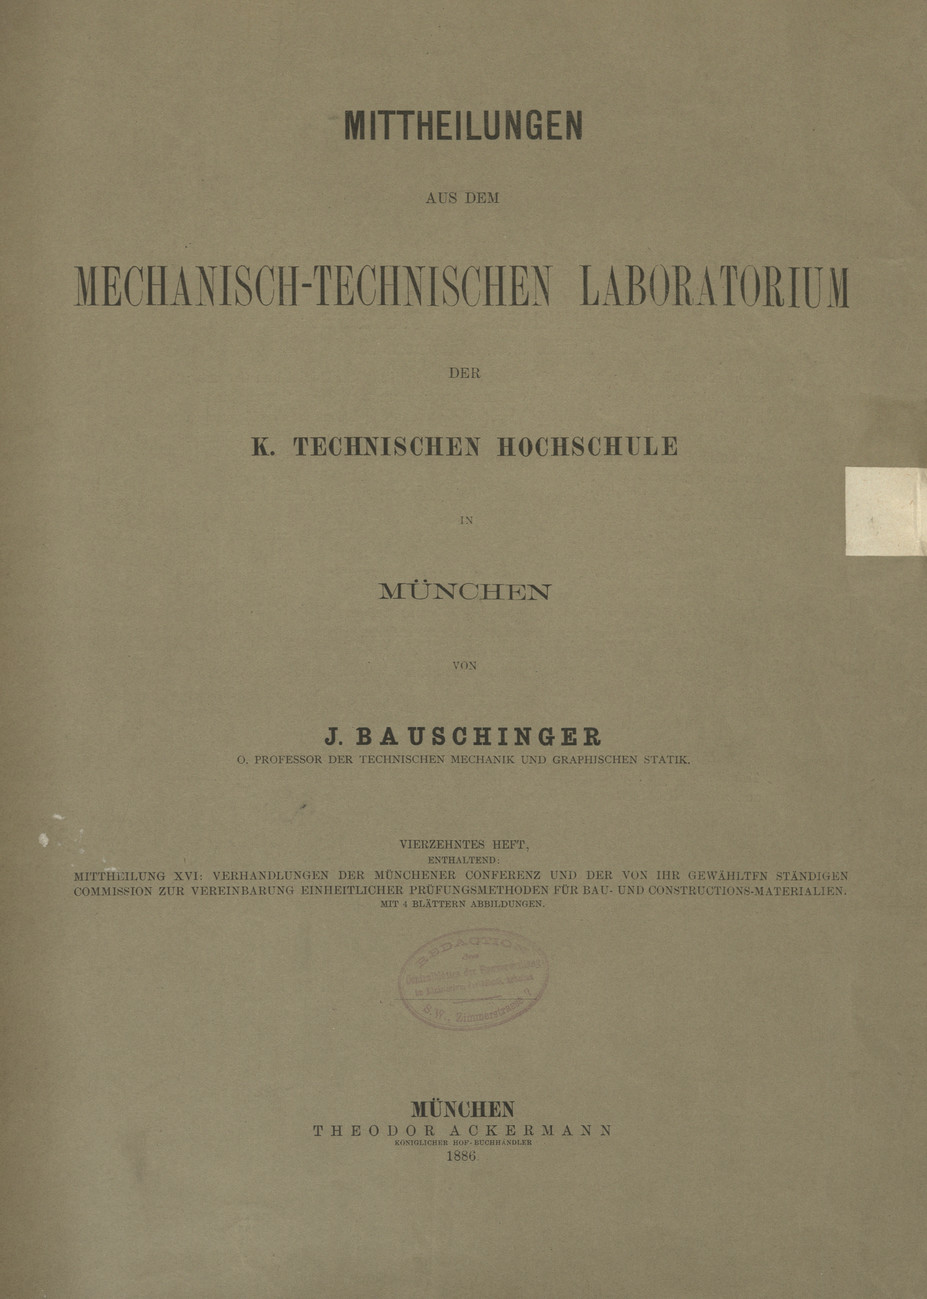 itteilungen aus dem Mechanisch -Technischen Laboratorium der K. Technischen Hochschule in München, H. 14